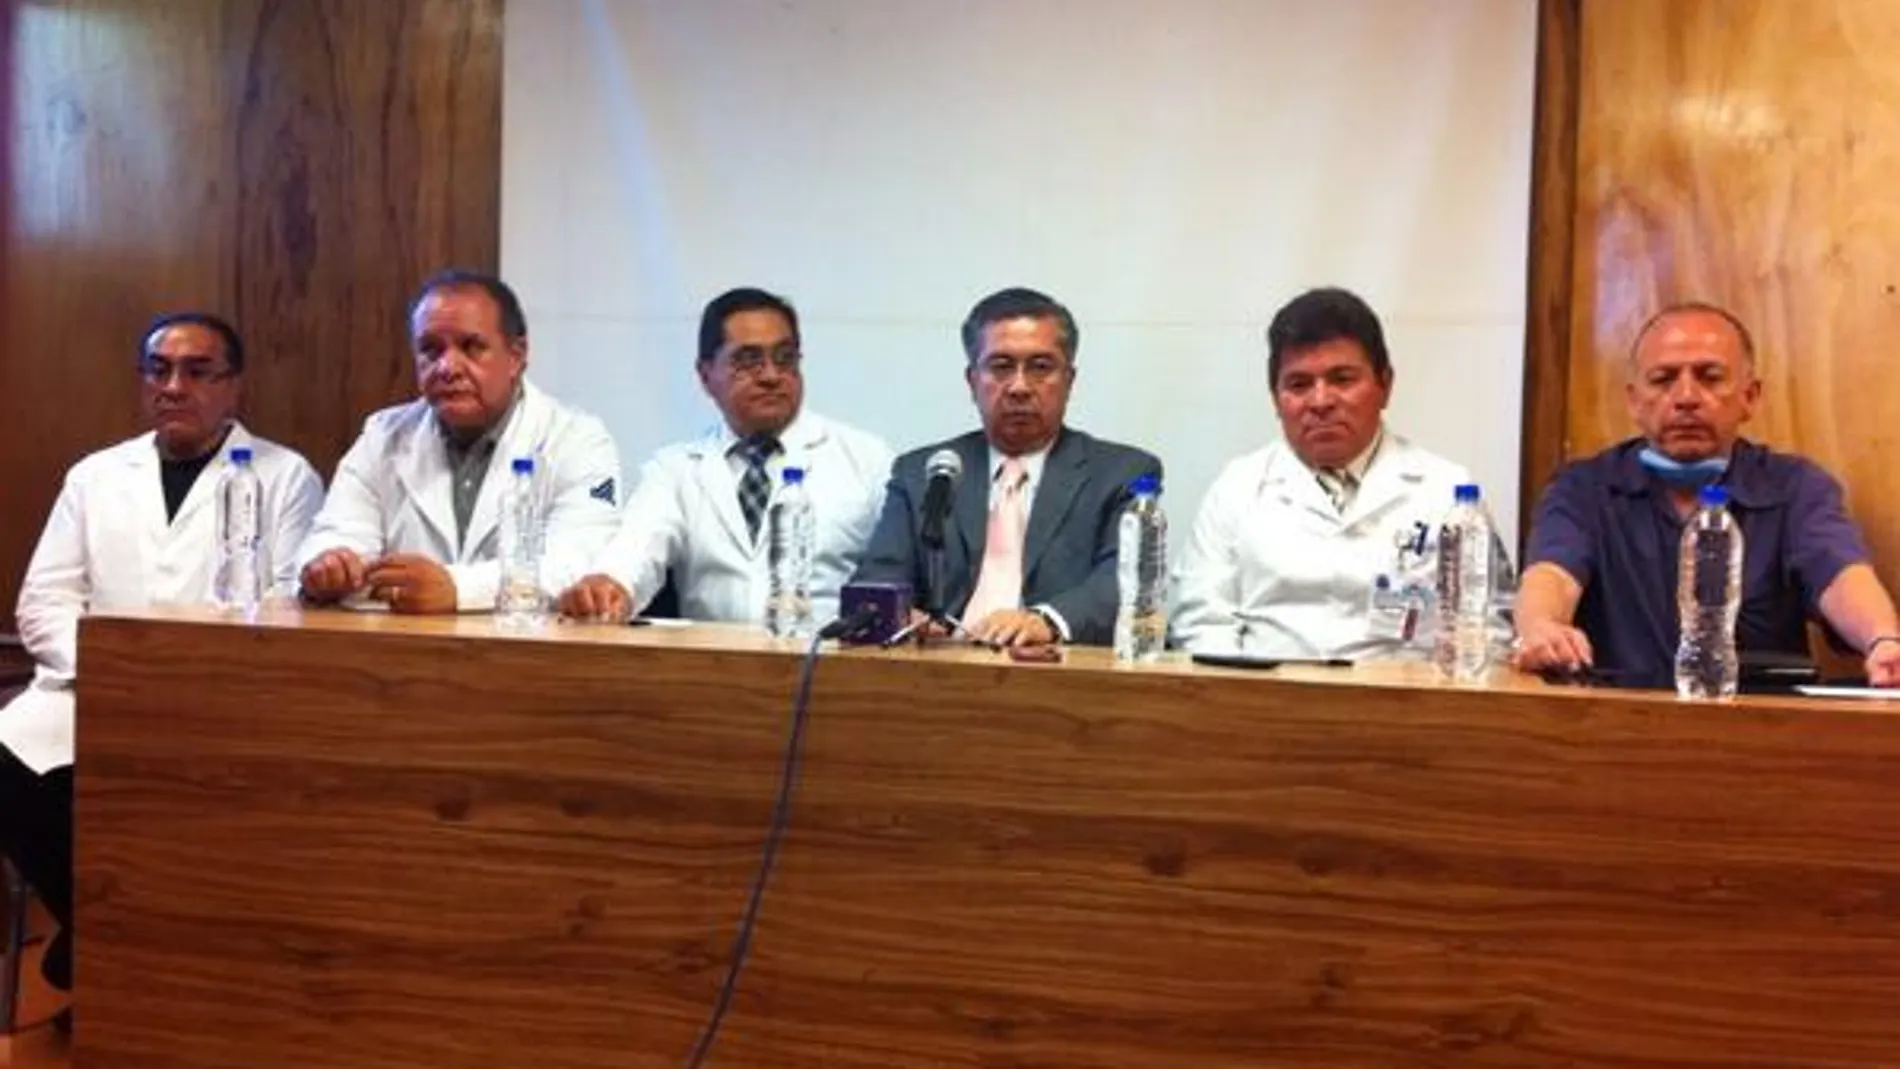 El equipo médico encabezado por el doctor Francisco Chong